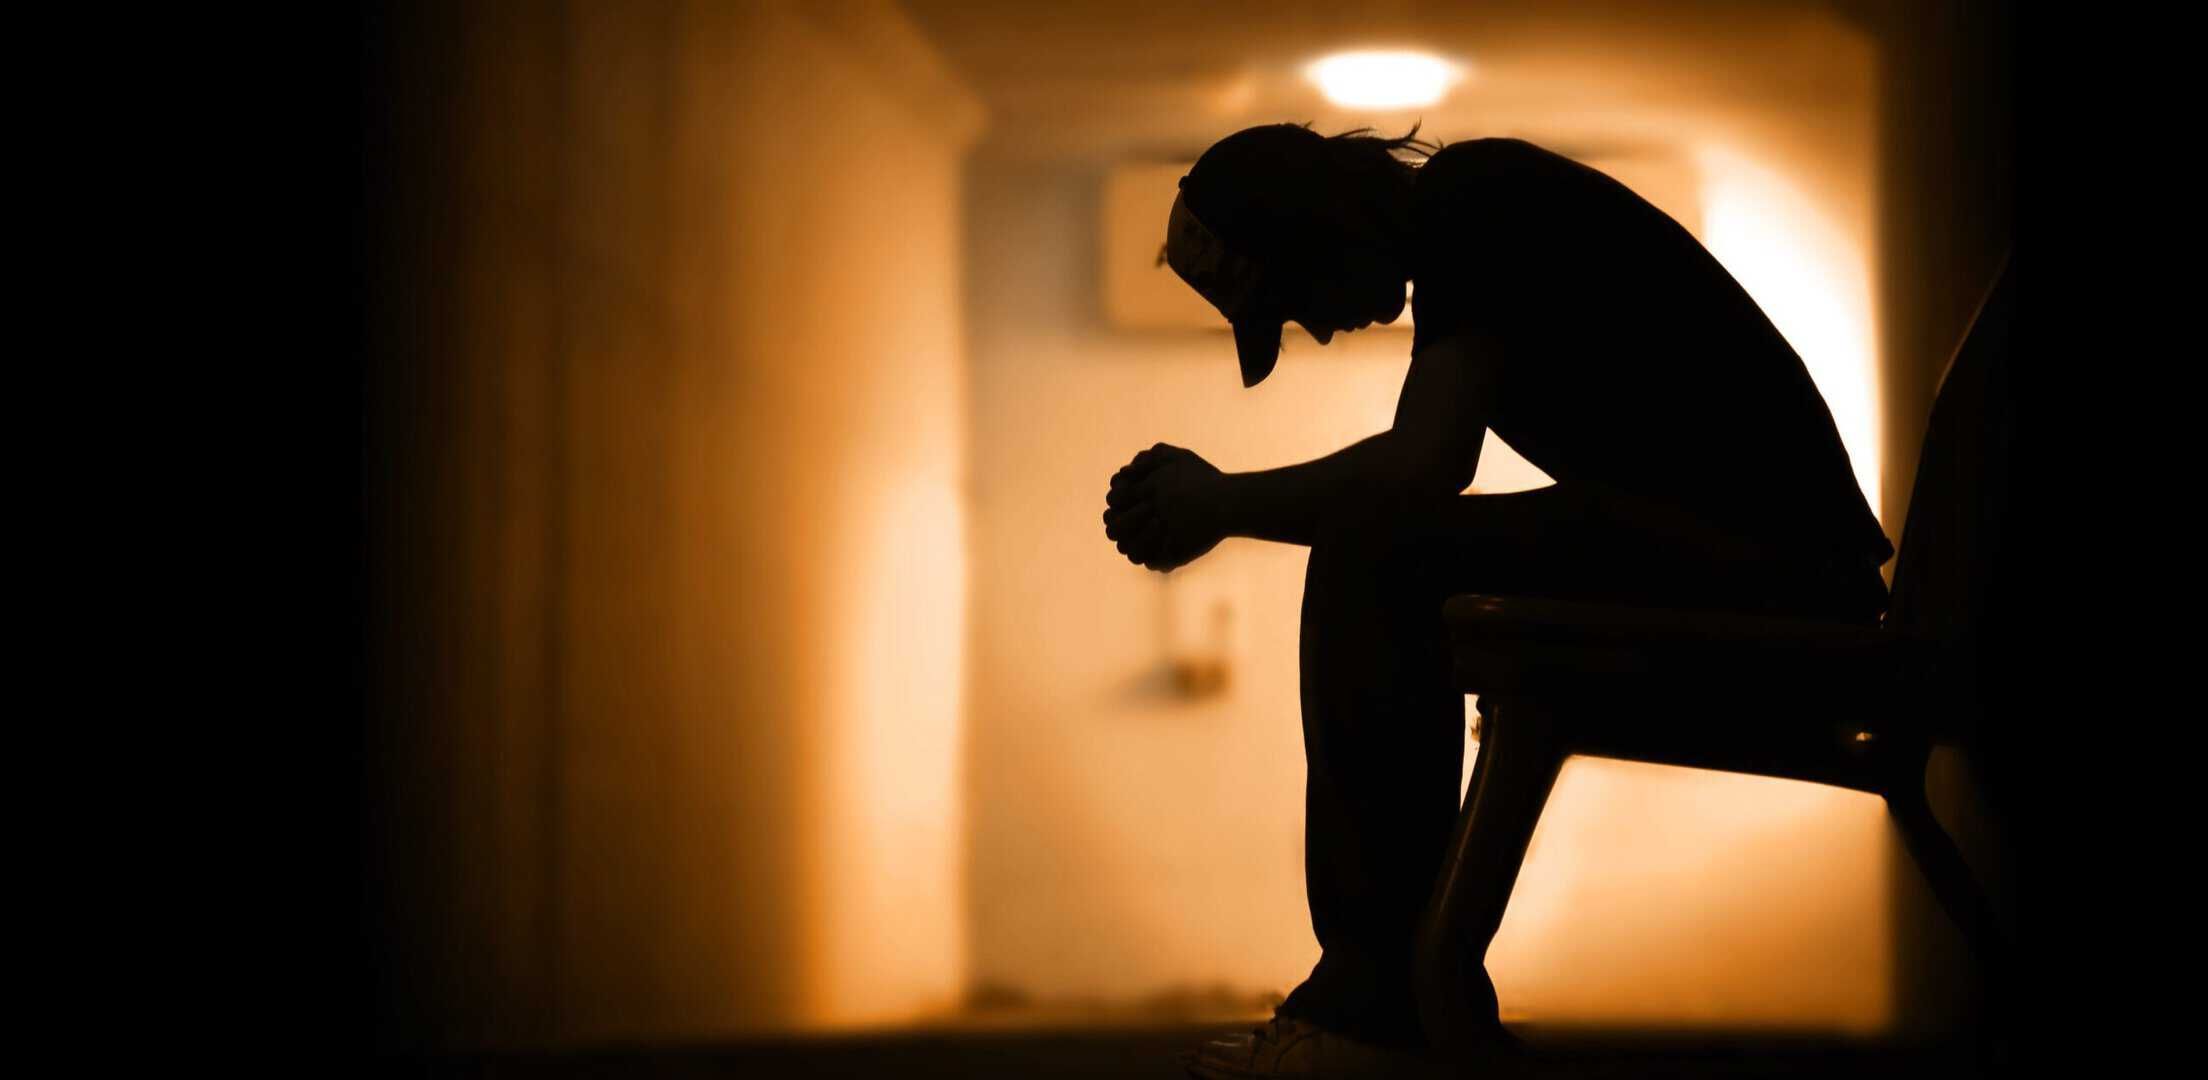 A man sitting alone in a dark hallway struggling with drug addiction